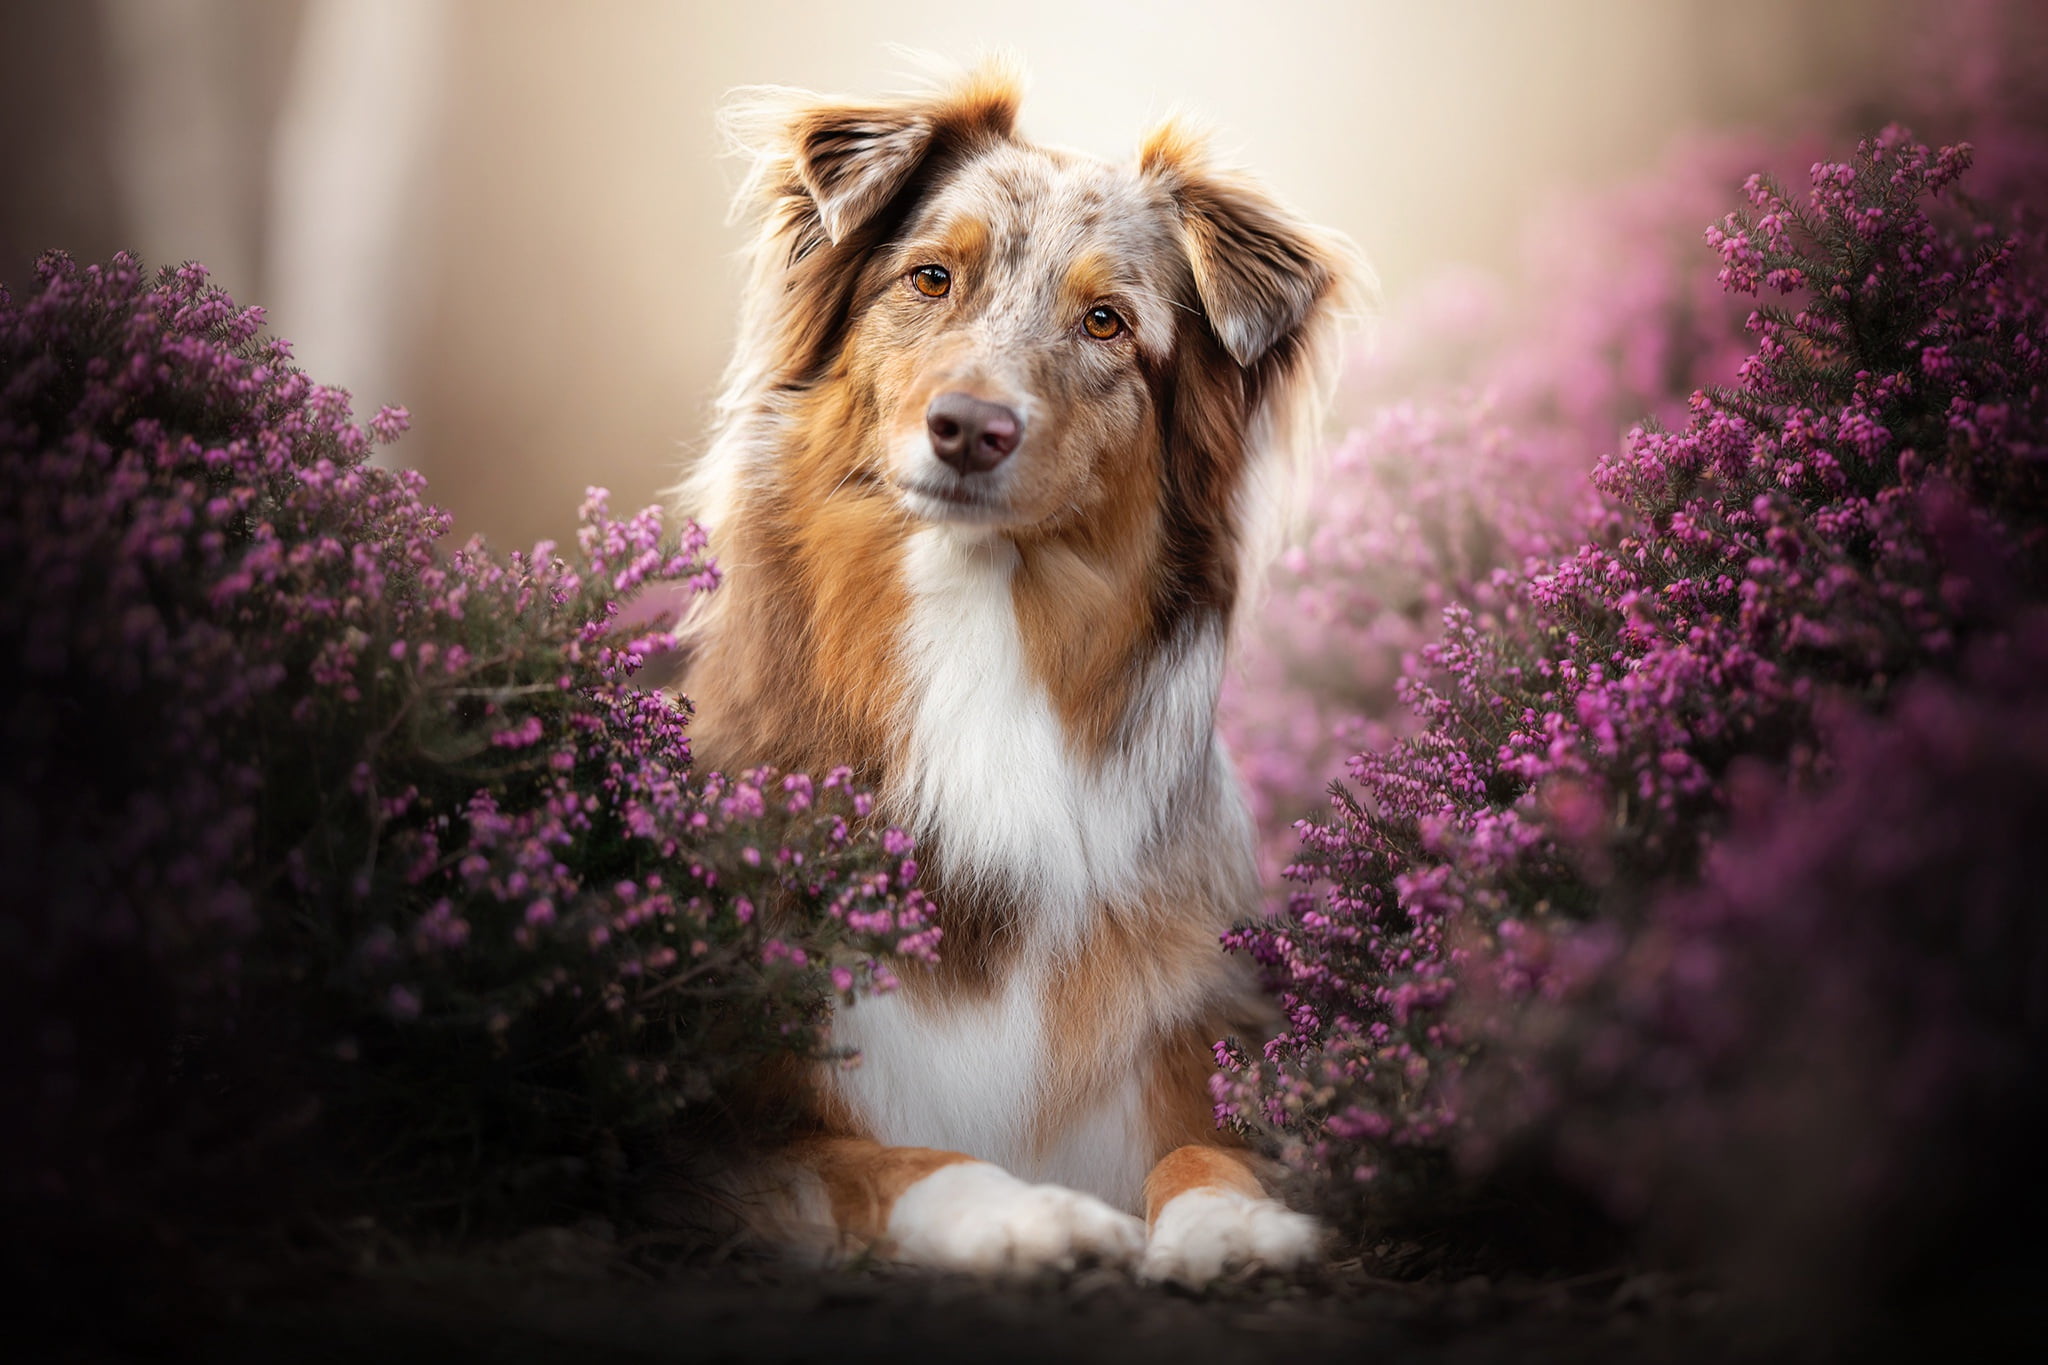 Dogs, Australian Shepherd, Lavender, Pet, Pink Flower